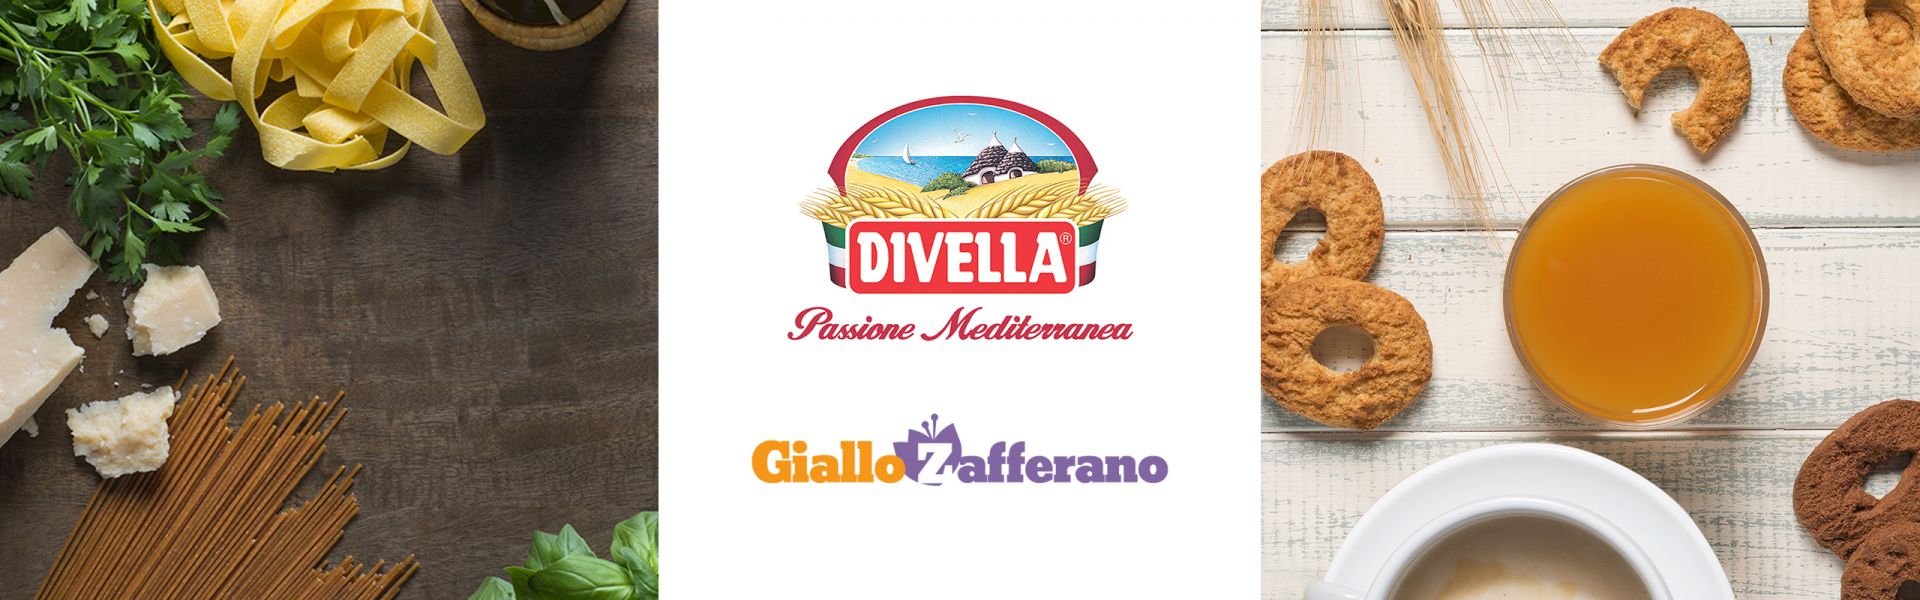 Divella pasta & biscuits in Giallo Zafferano recipes